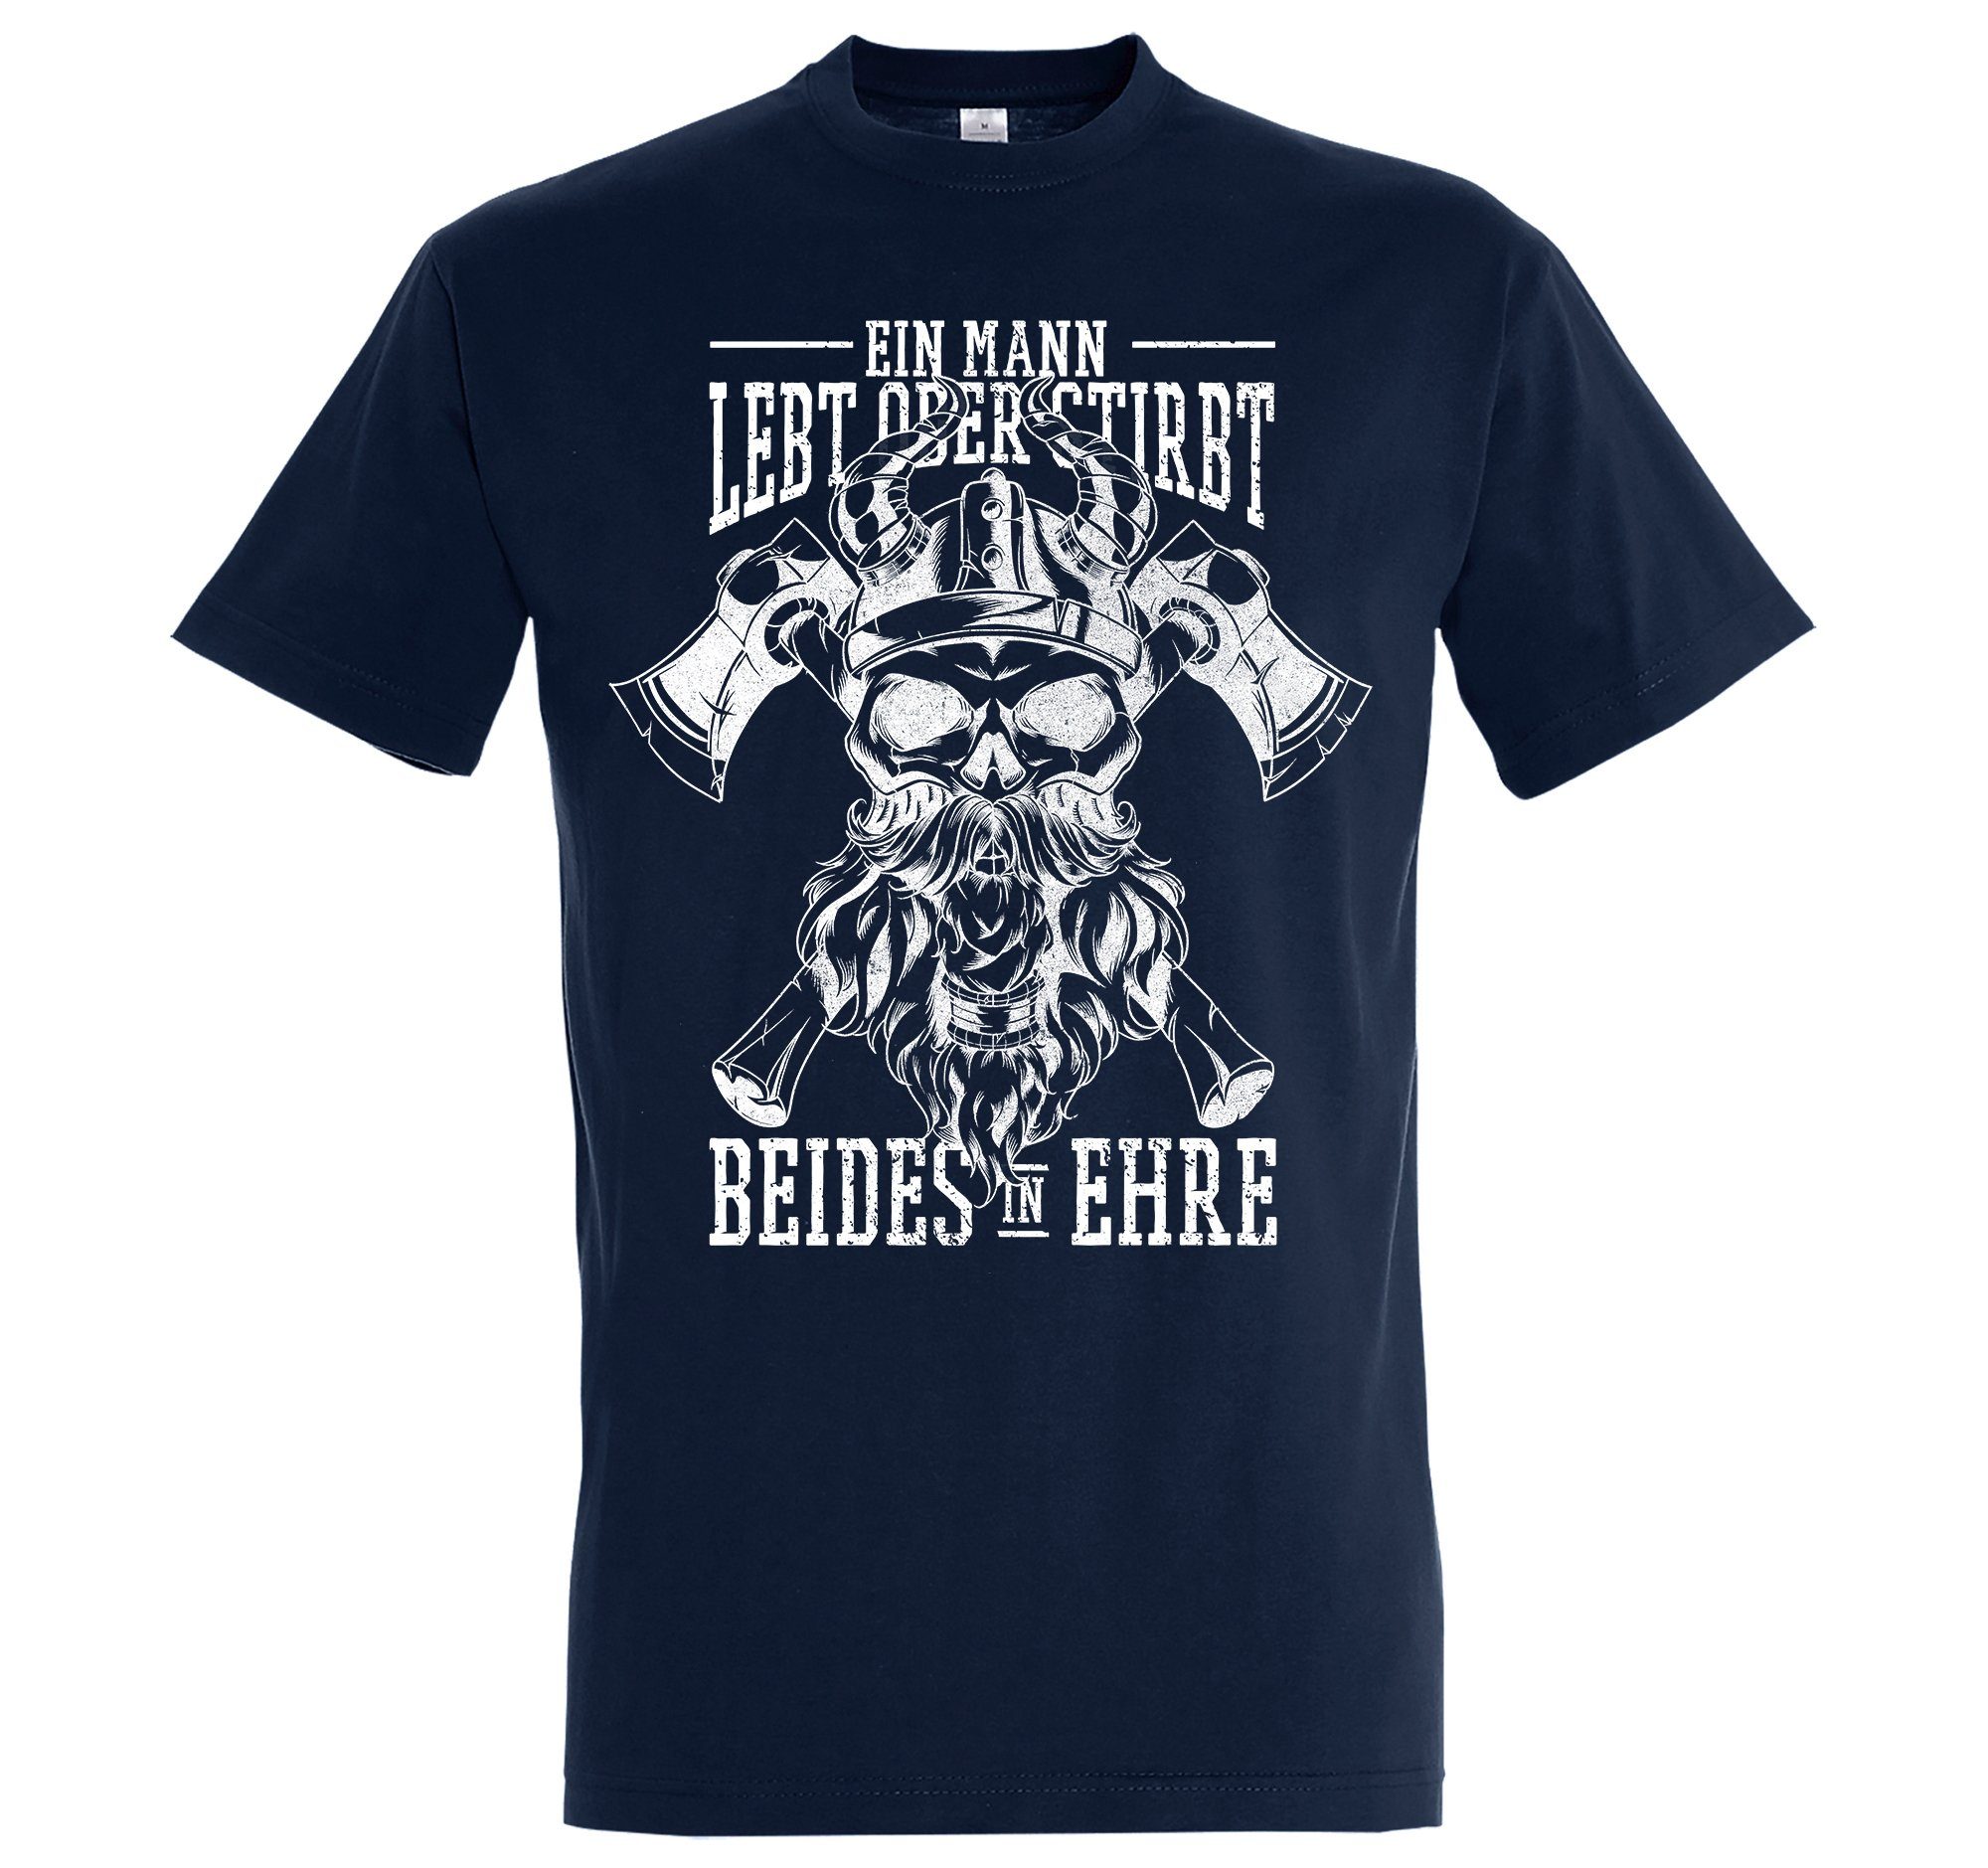 Stirbt, mit Oder Herren Ehre" Frontprint Designz In Lebt Navyblau Youth trendigem Mann "Ein Beides T-Shirt Shirt